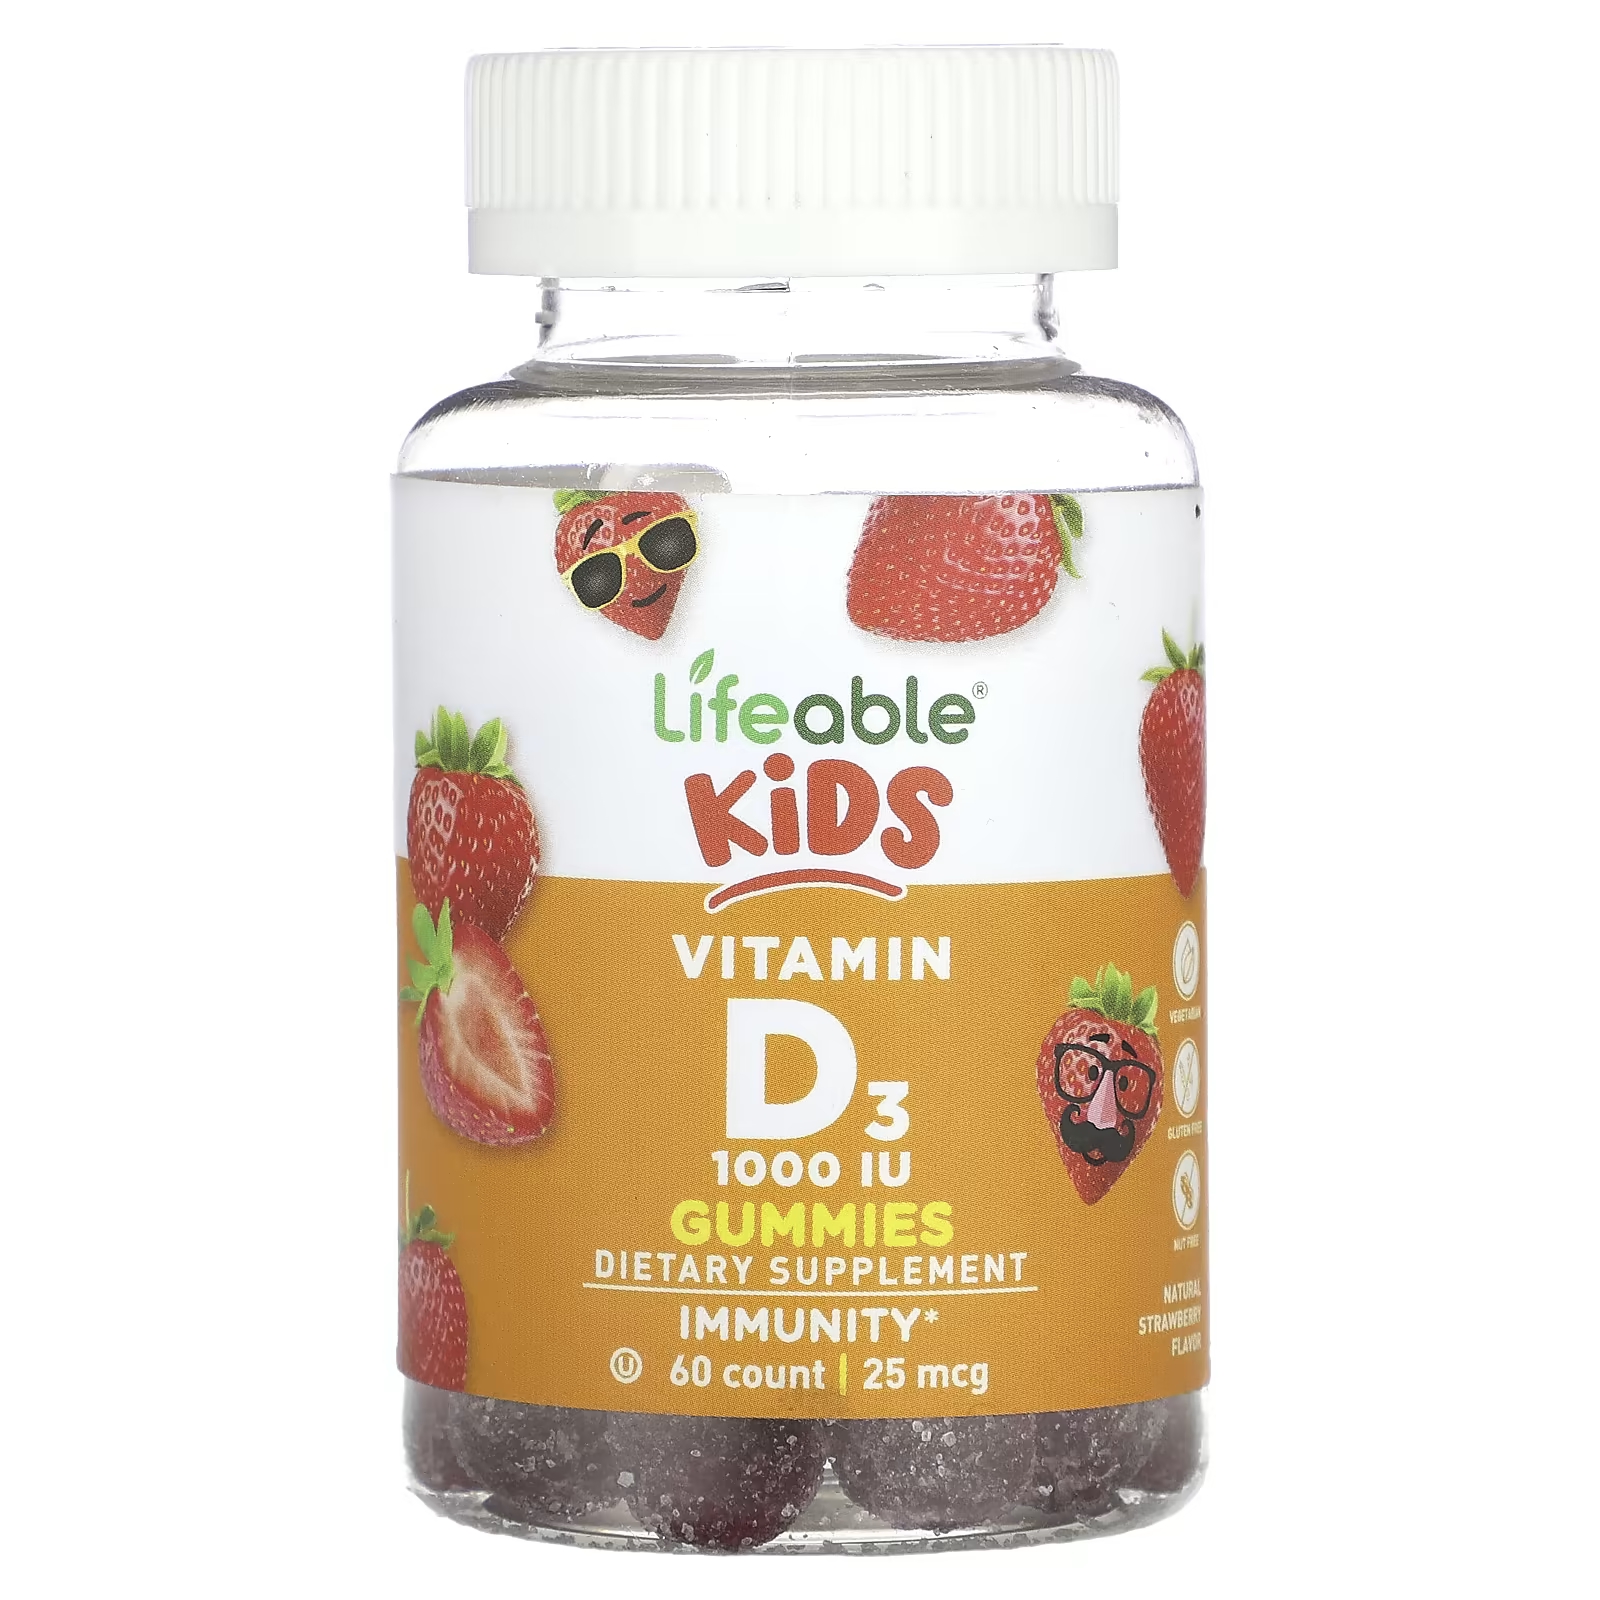 Жевательные конфеты Lifeable Kids с витамином D3, 60 жевательных таблеток жевательные конфеты lifeable kids с витамином d3 натуральная клубника 25 мкг 1000 ме 60 жевательных таблеток